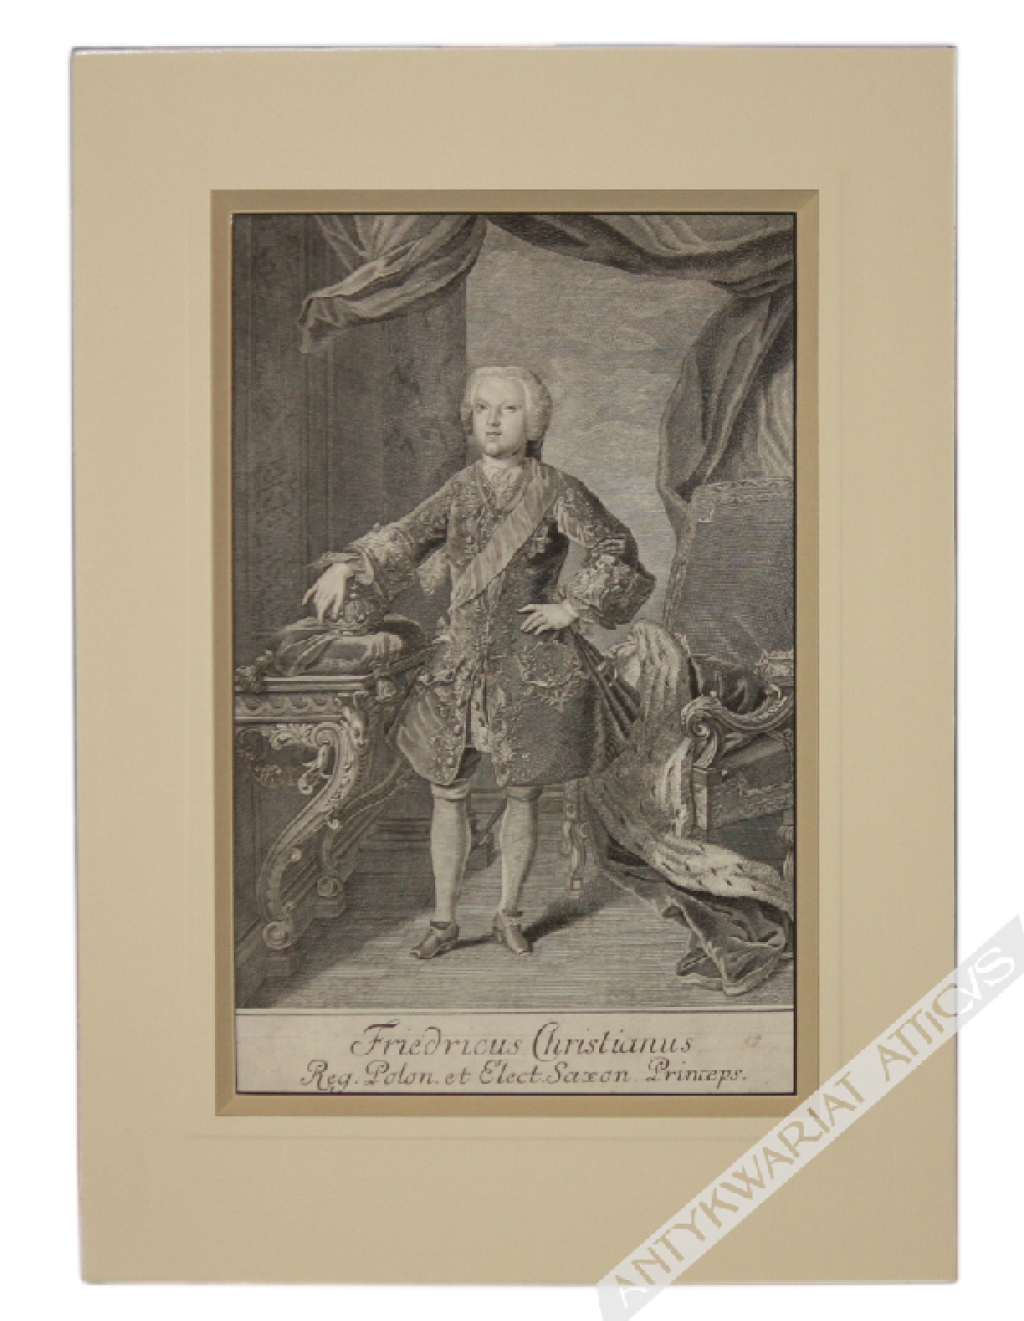 [rycina, 1752] Friedricus Christianus Reg. Polon. et Elect. Saxon. Princeps [Fryderyk Krystian Wettyn, syn Augusta III]